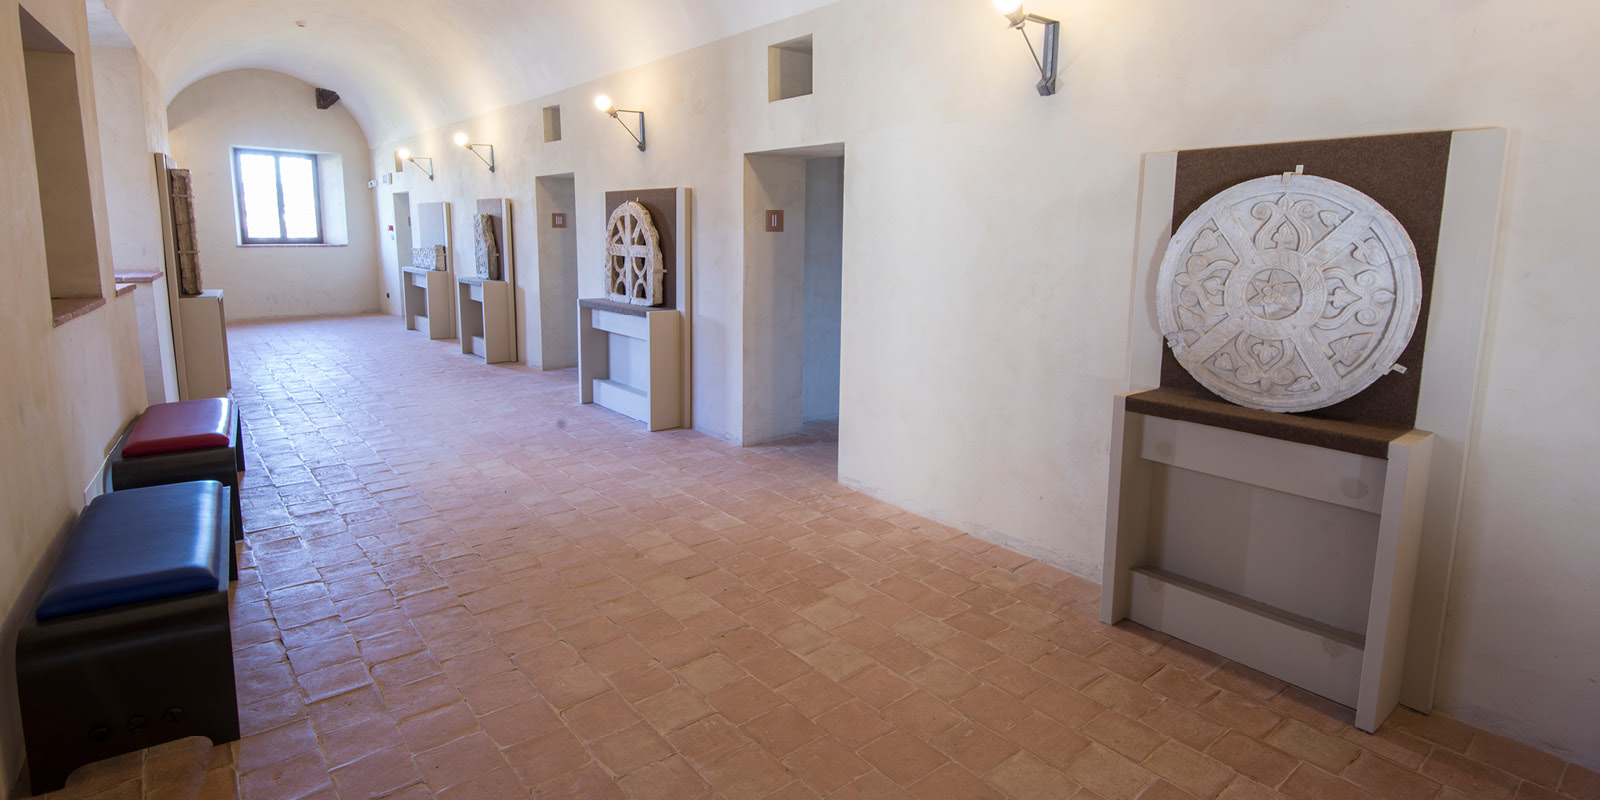 Touchwindow - Ascoli Piceno. Forte Malatesta: Museo dell'Alto Medioevo